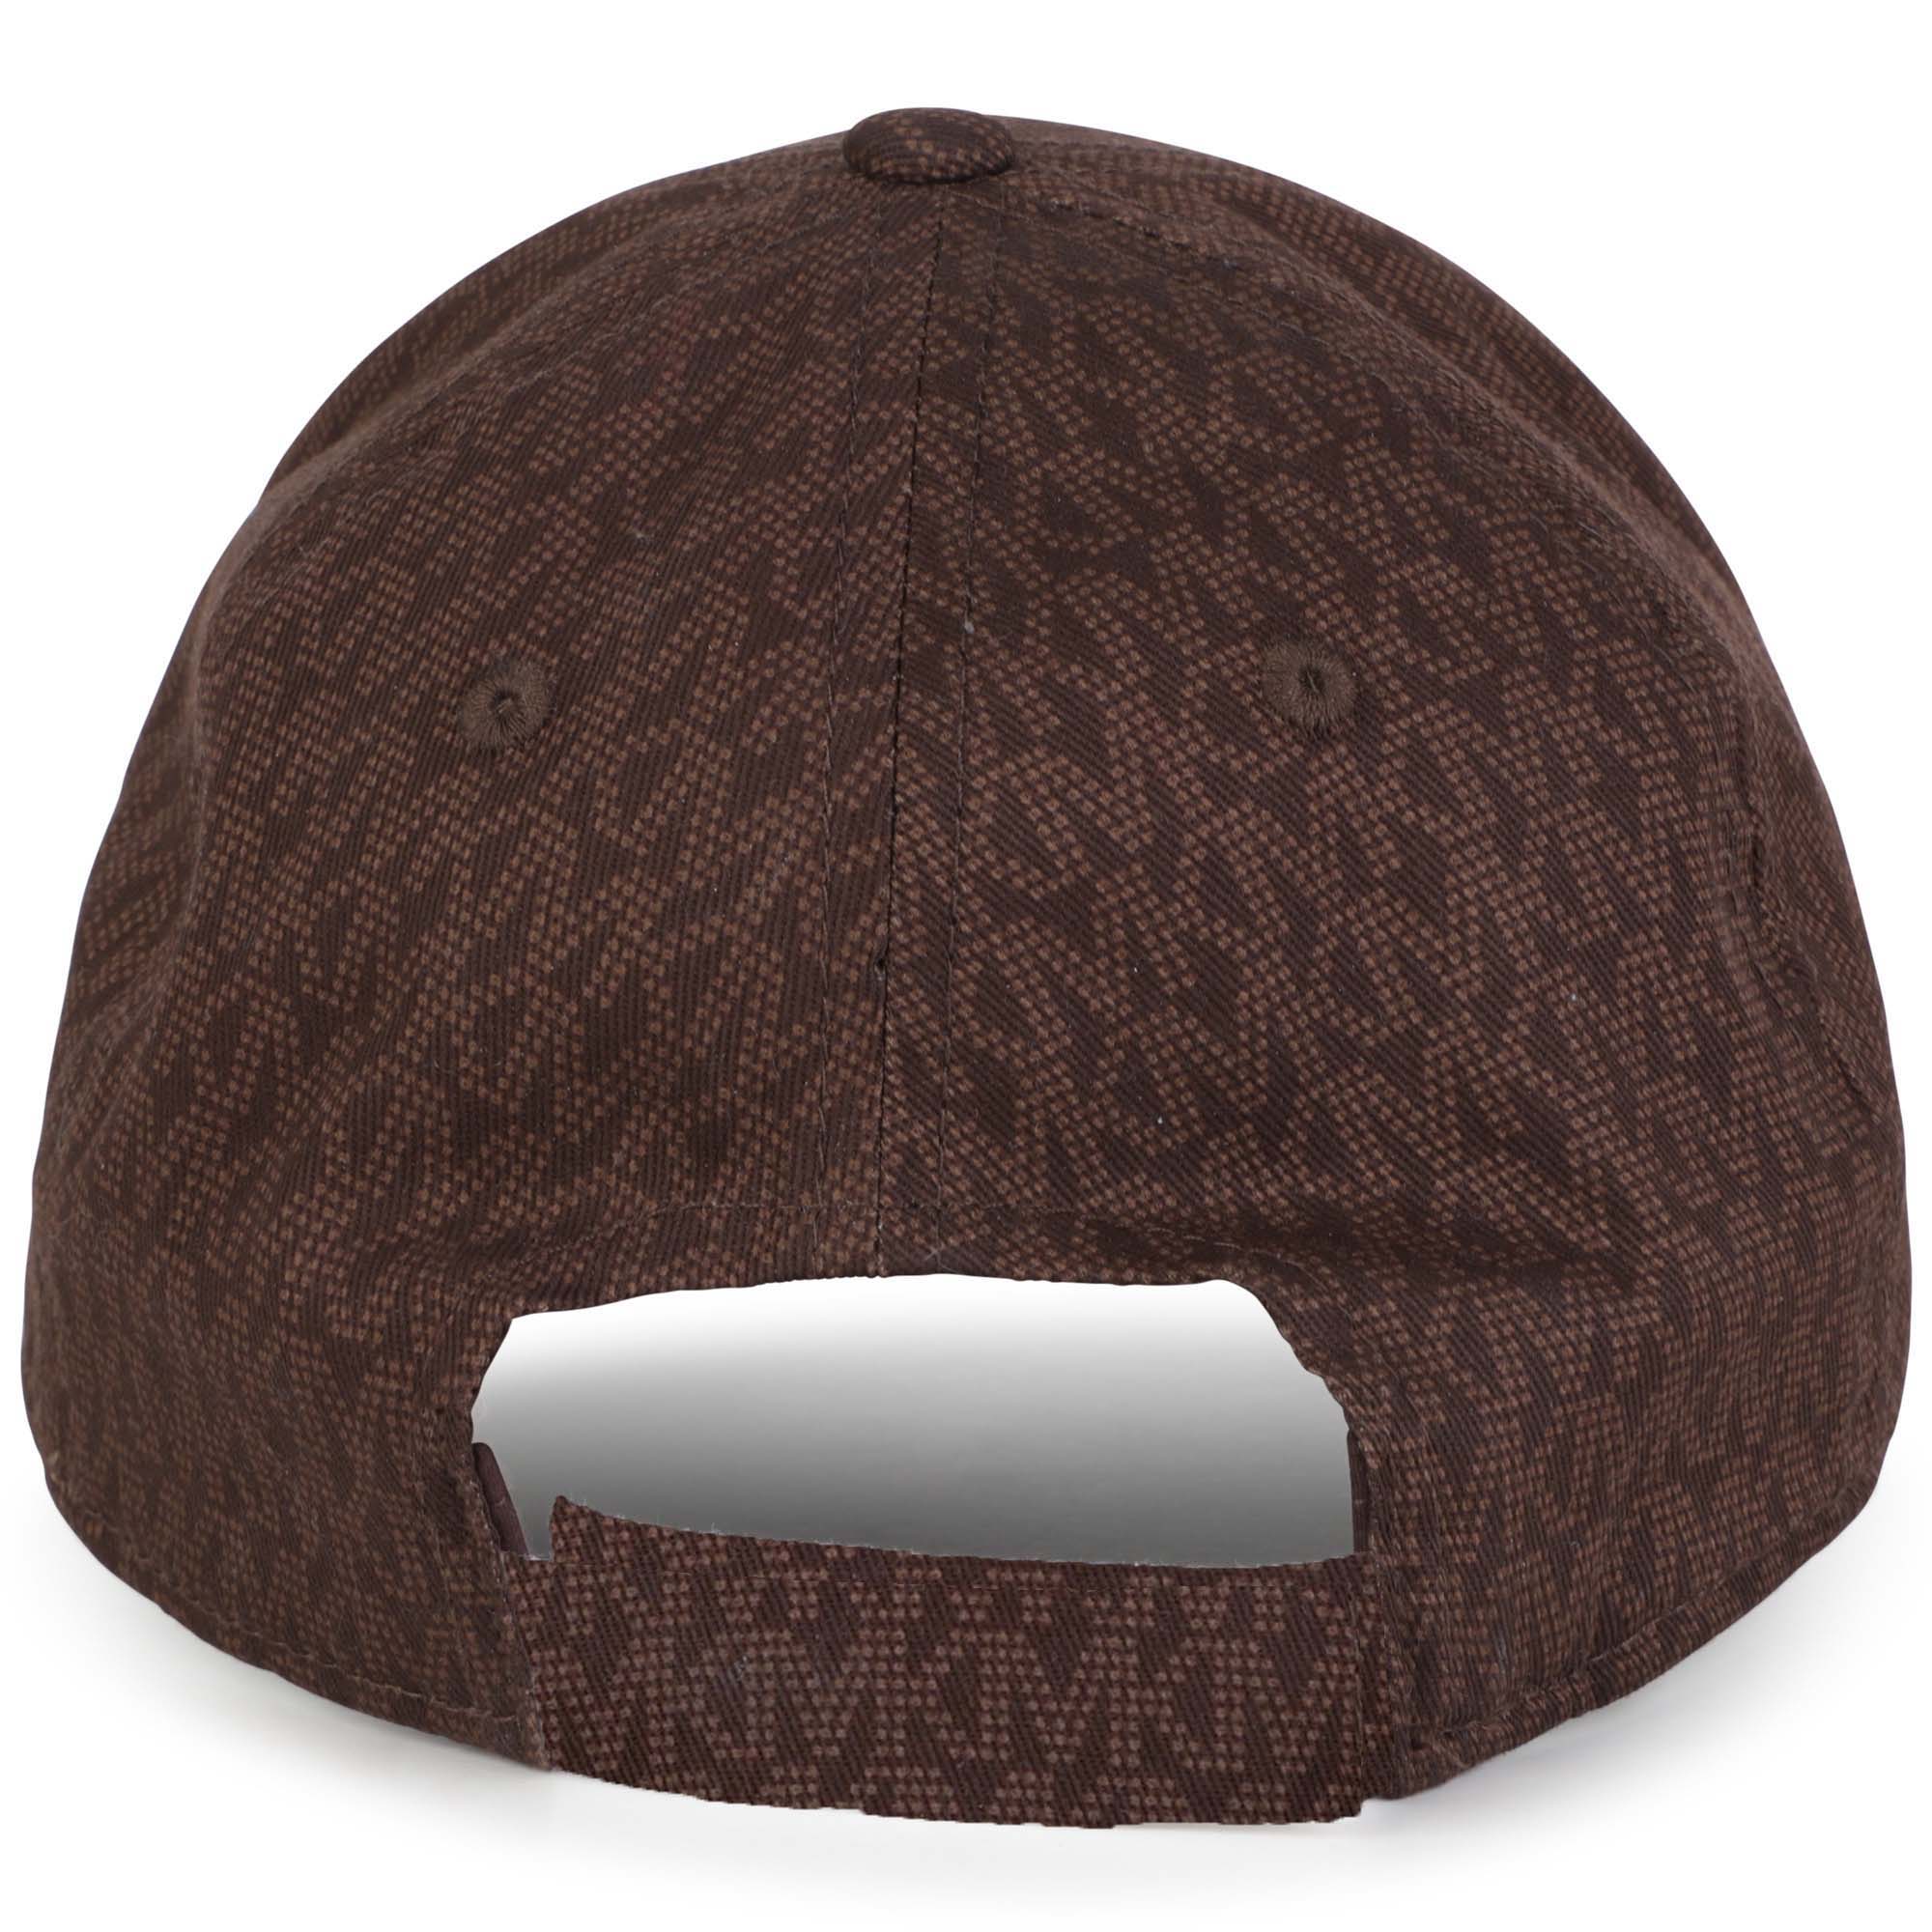 Cappellino in cotone stampato MICHAEL KORS Per BAMBINA